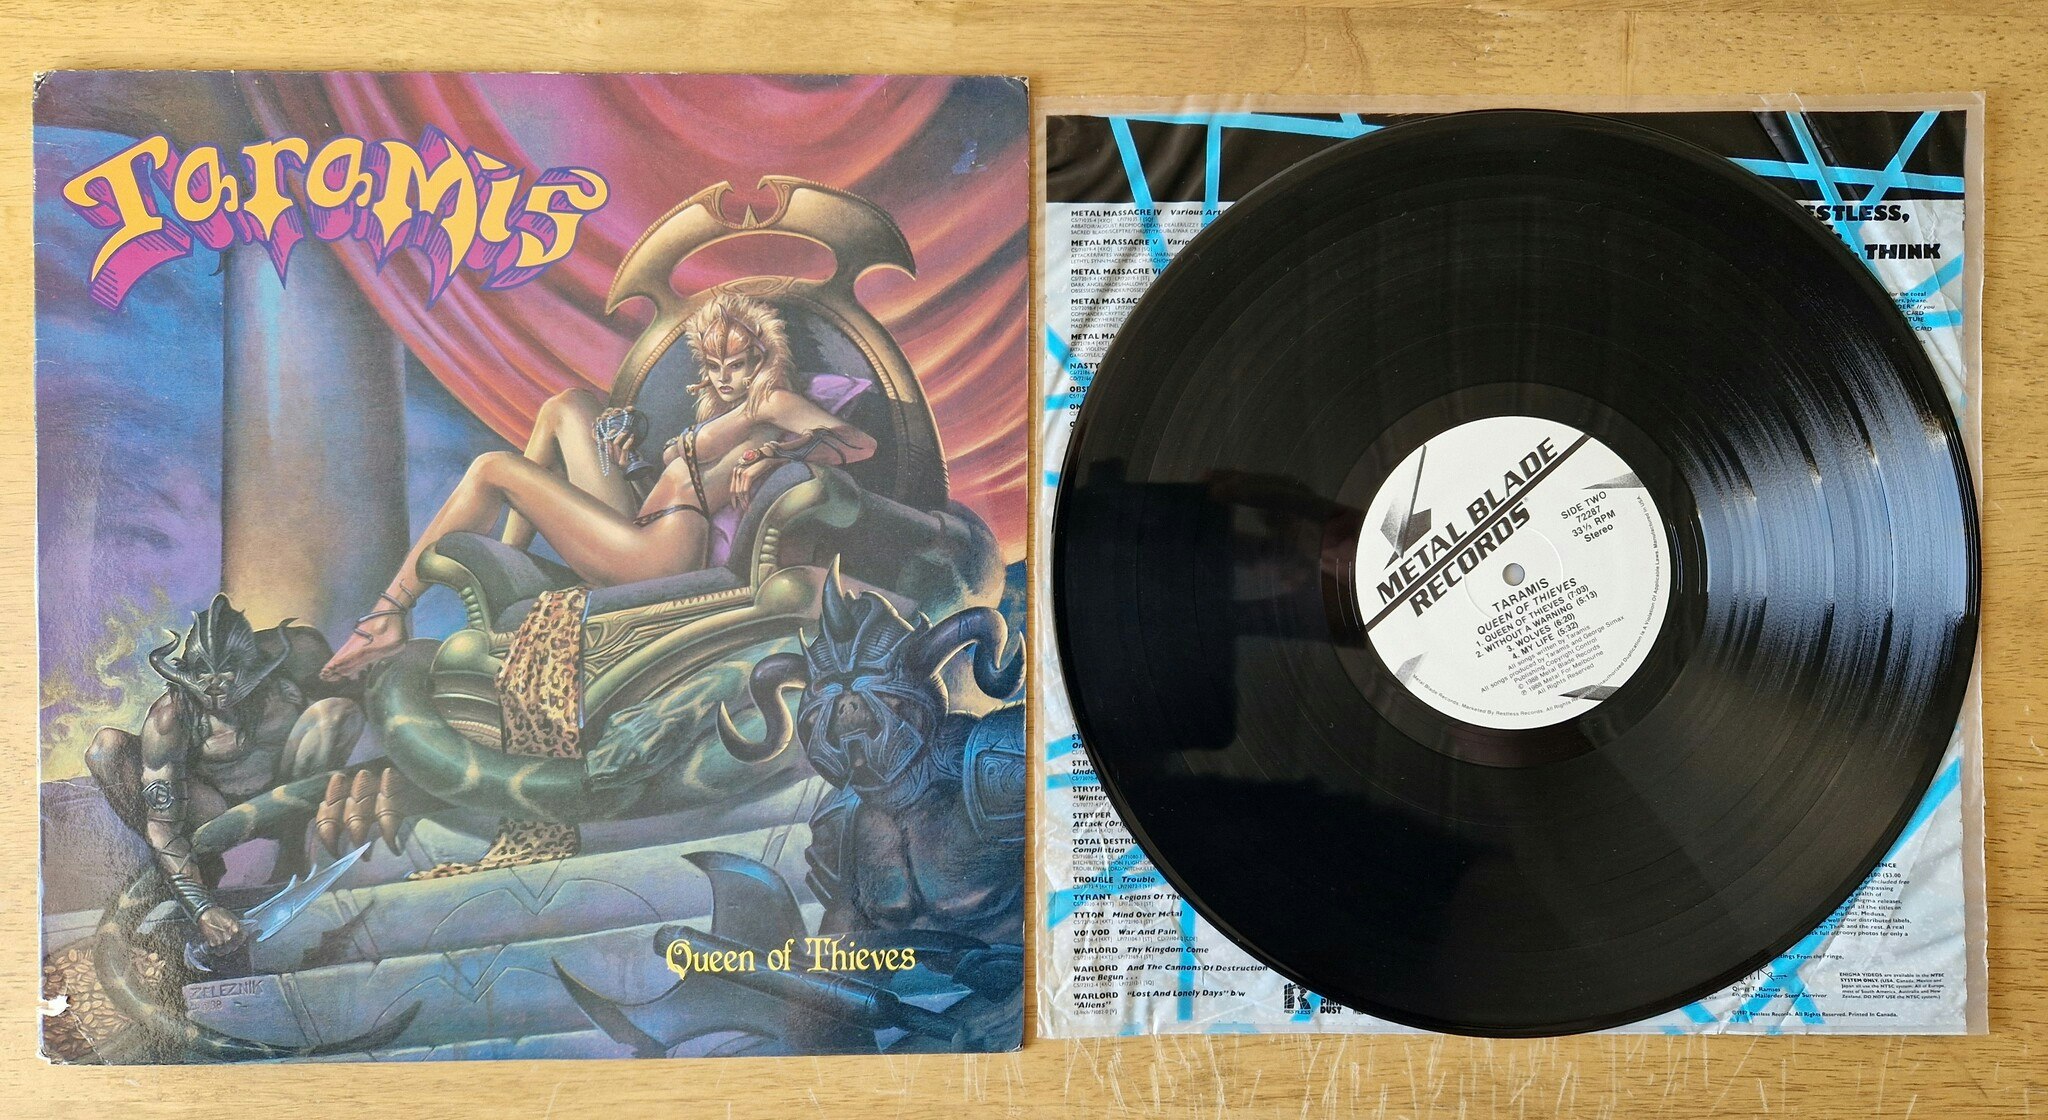 Taramis, Queen of thieves. Vinyl LP